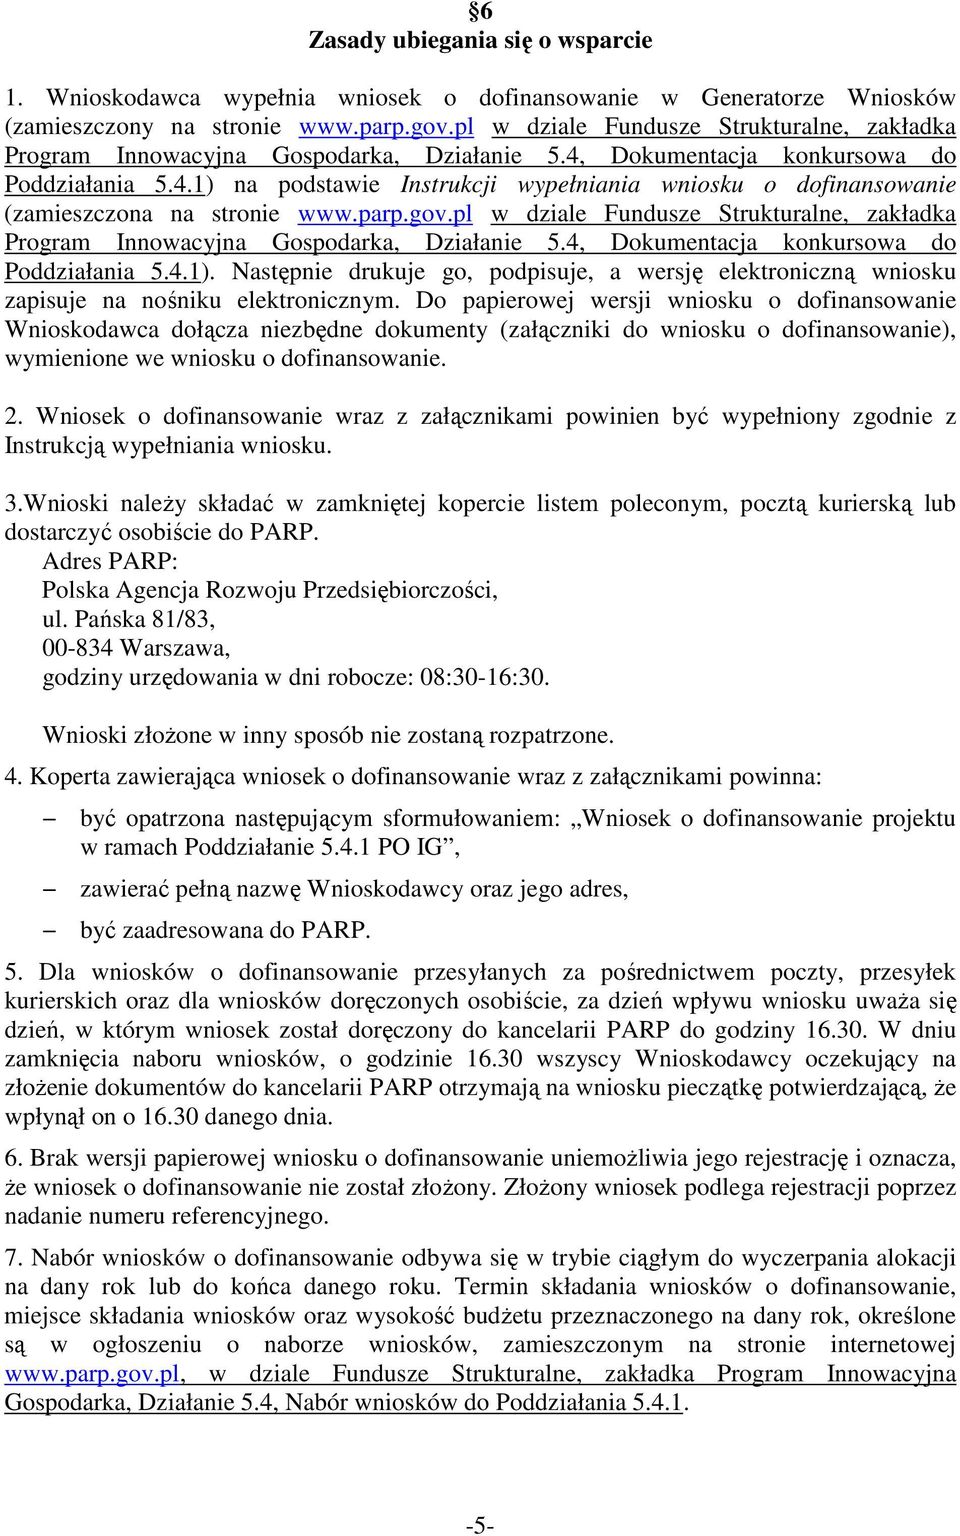 parp.gov.pl w dziale Fundusze Strukturalne, zakładka Program Innowacyjna Gospodarka, Działanie 5.4, Dokumentacja konkursowa do Poddziałania 5.4.1).